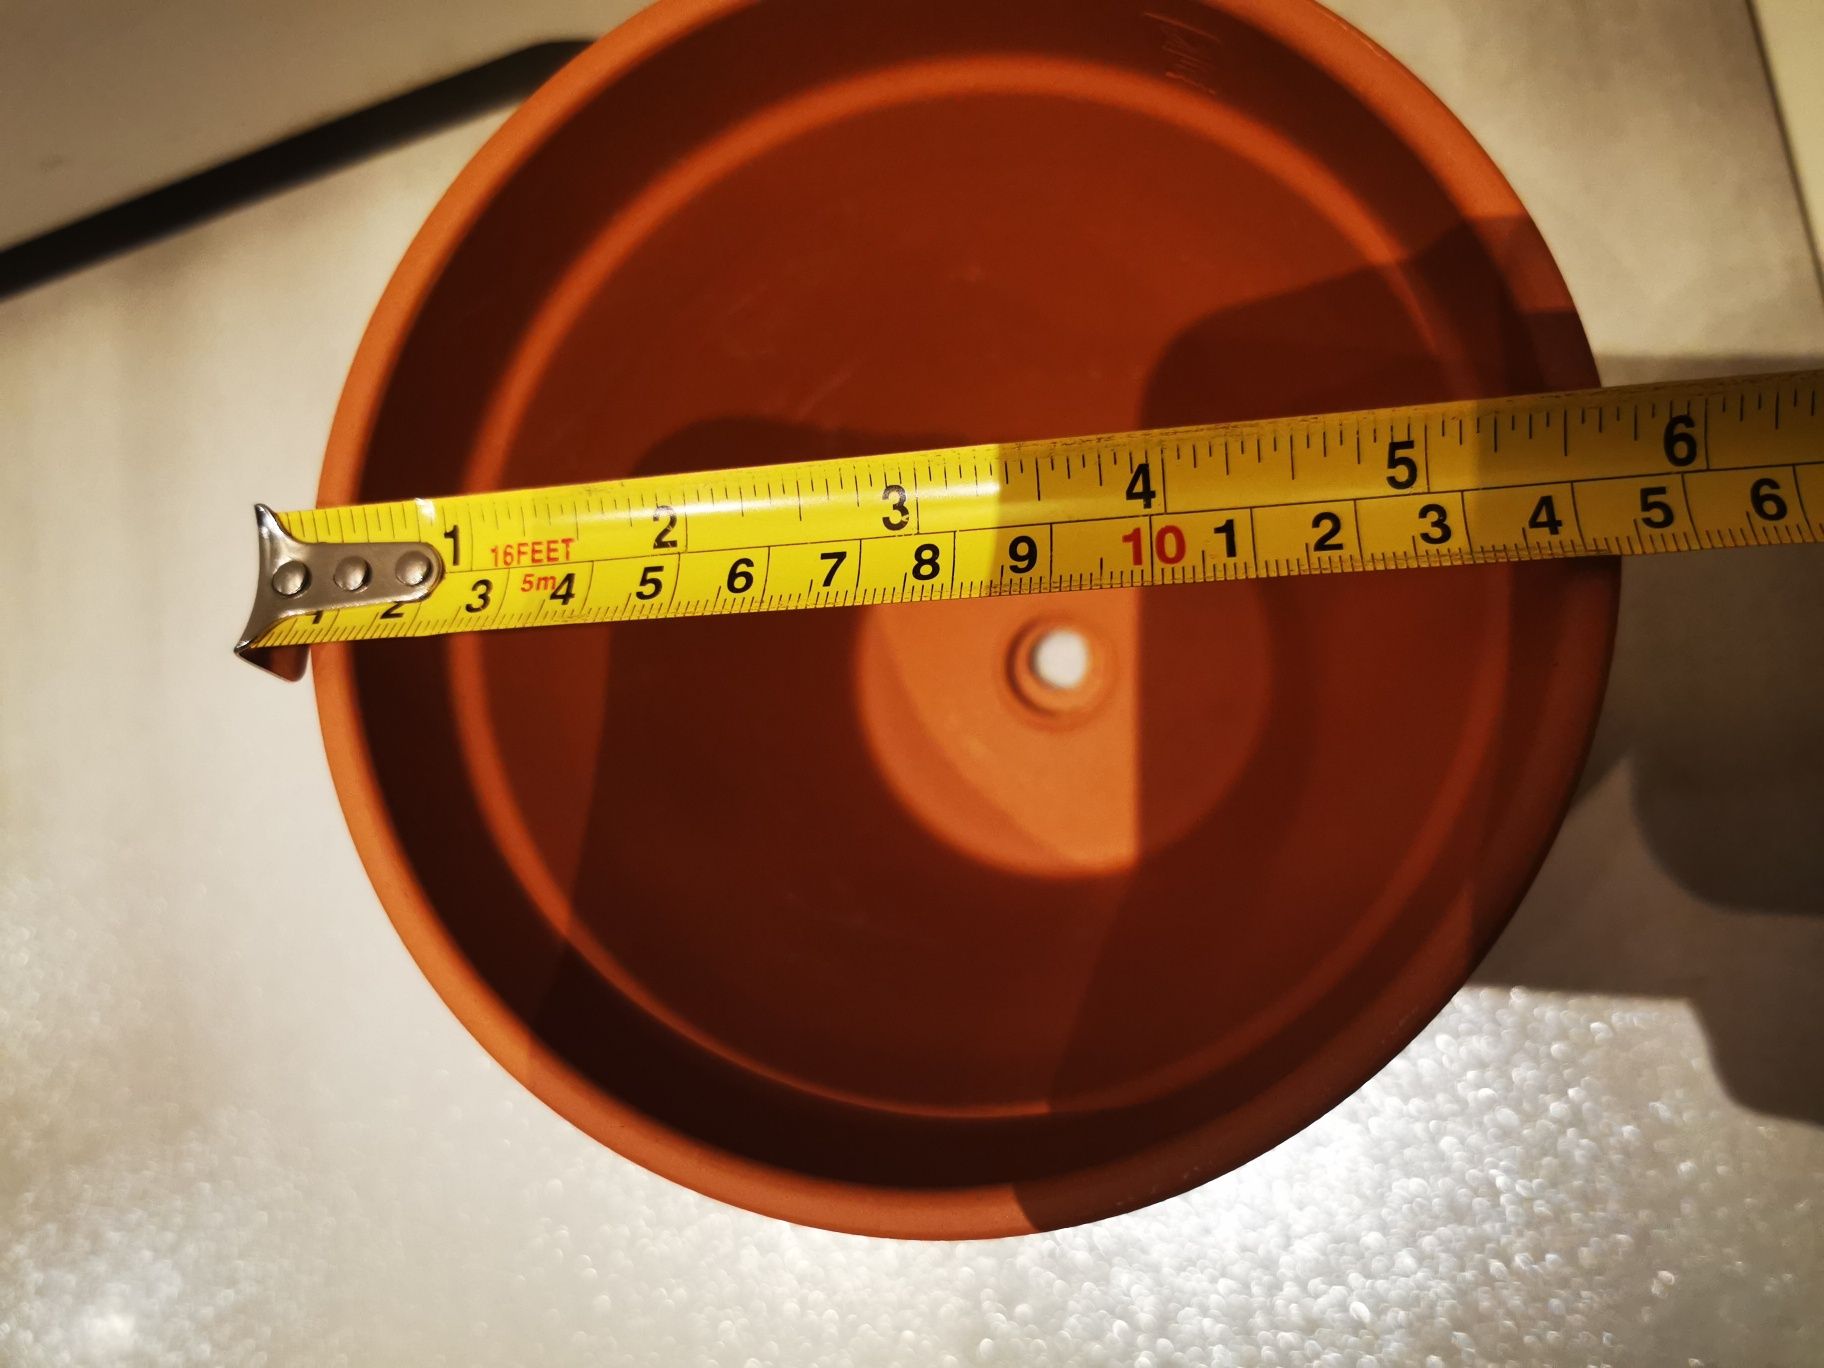 Doniczka ceramiczna pomarańczowa 14 x 13 cm nowa